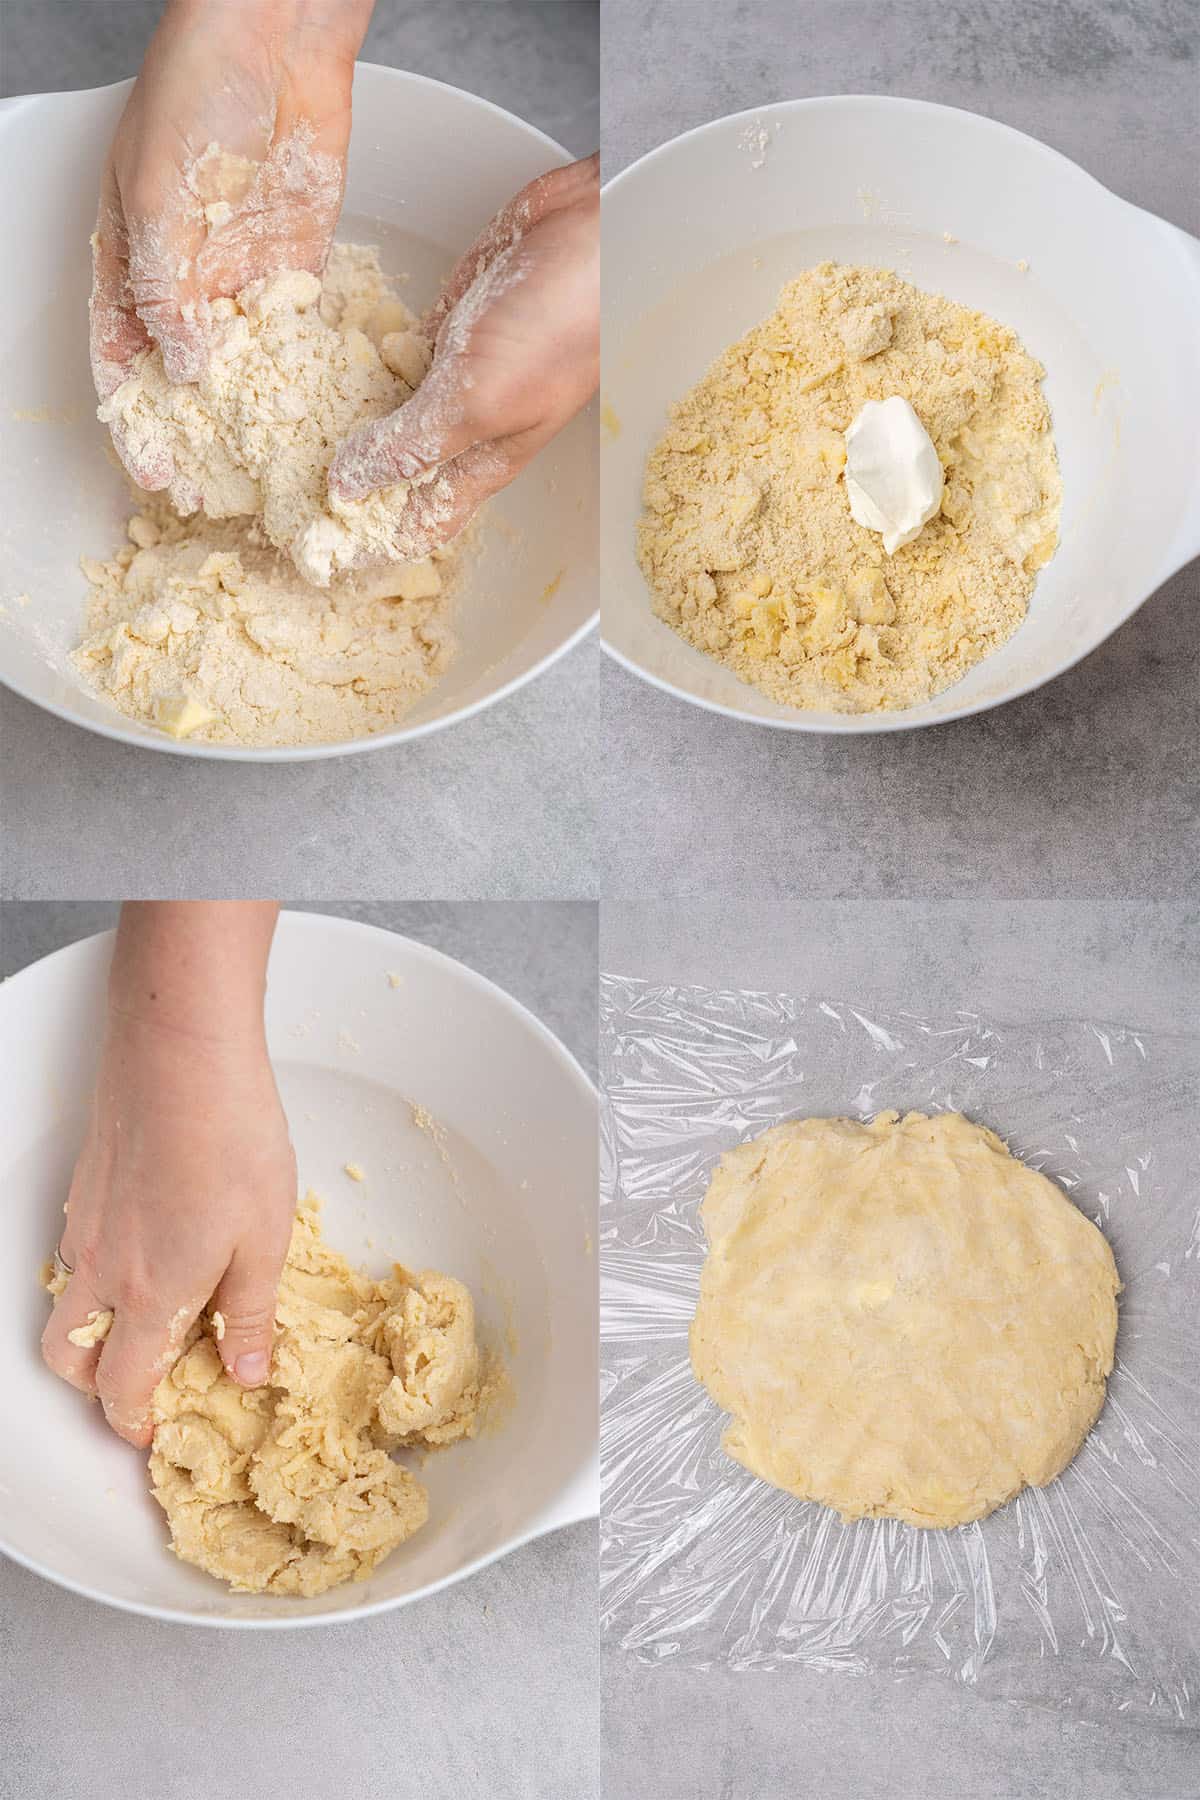 Galette dough process.